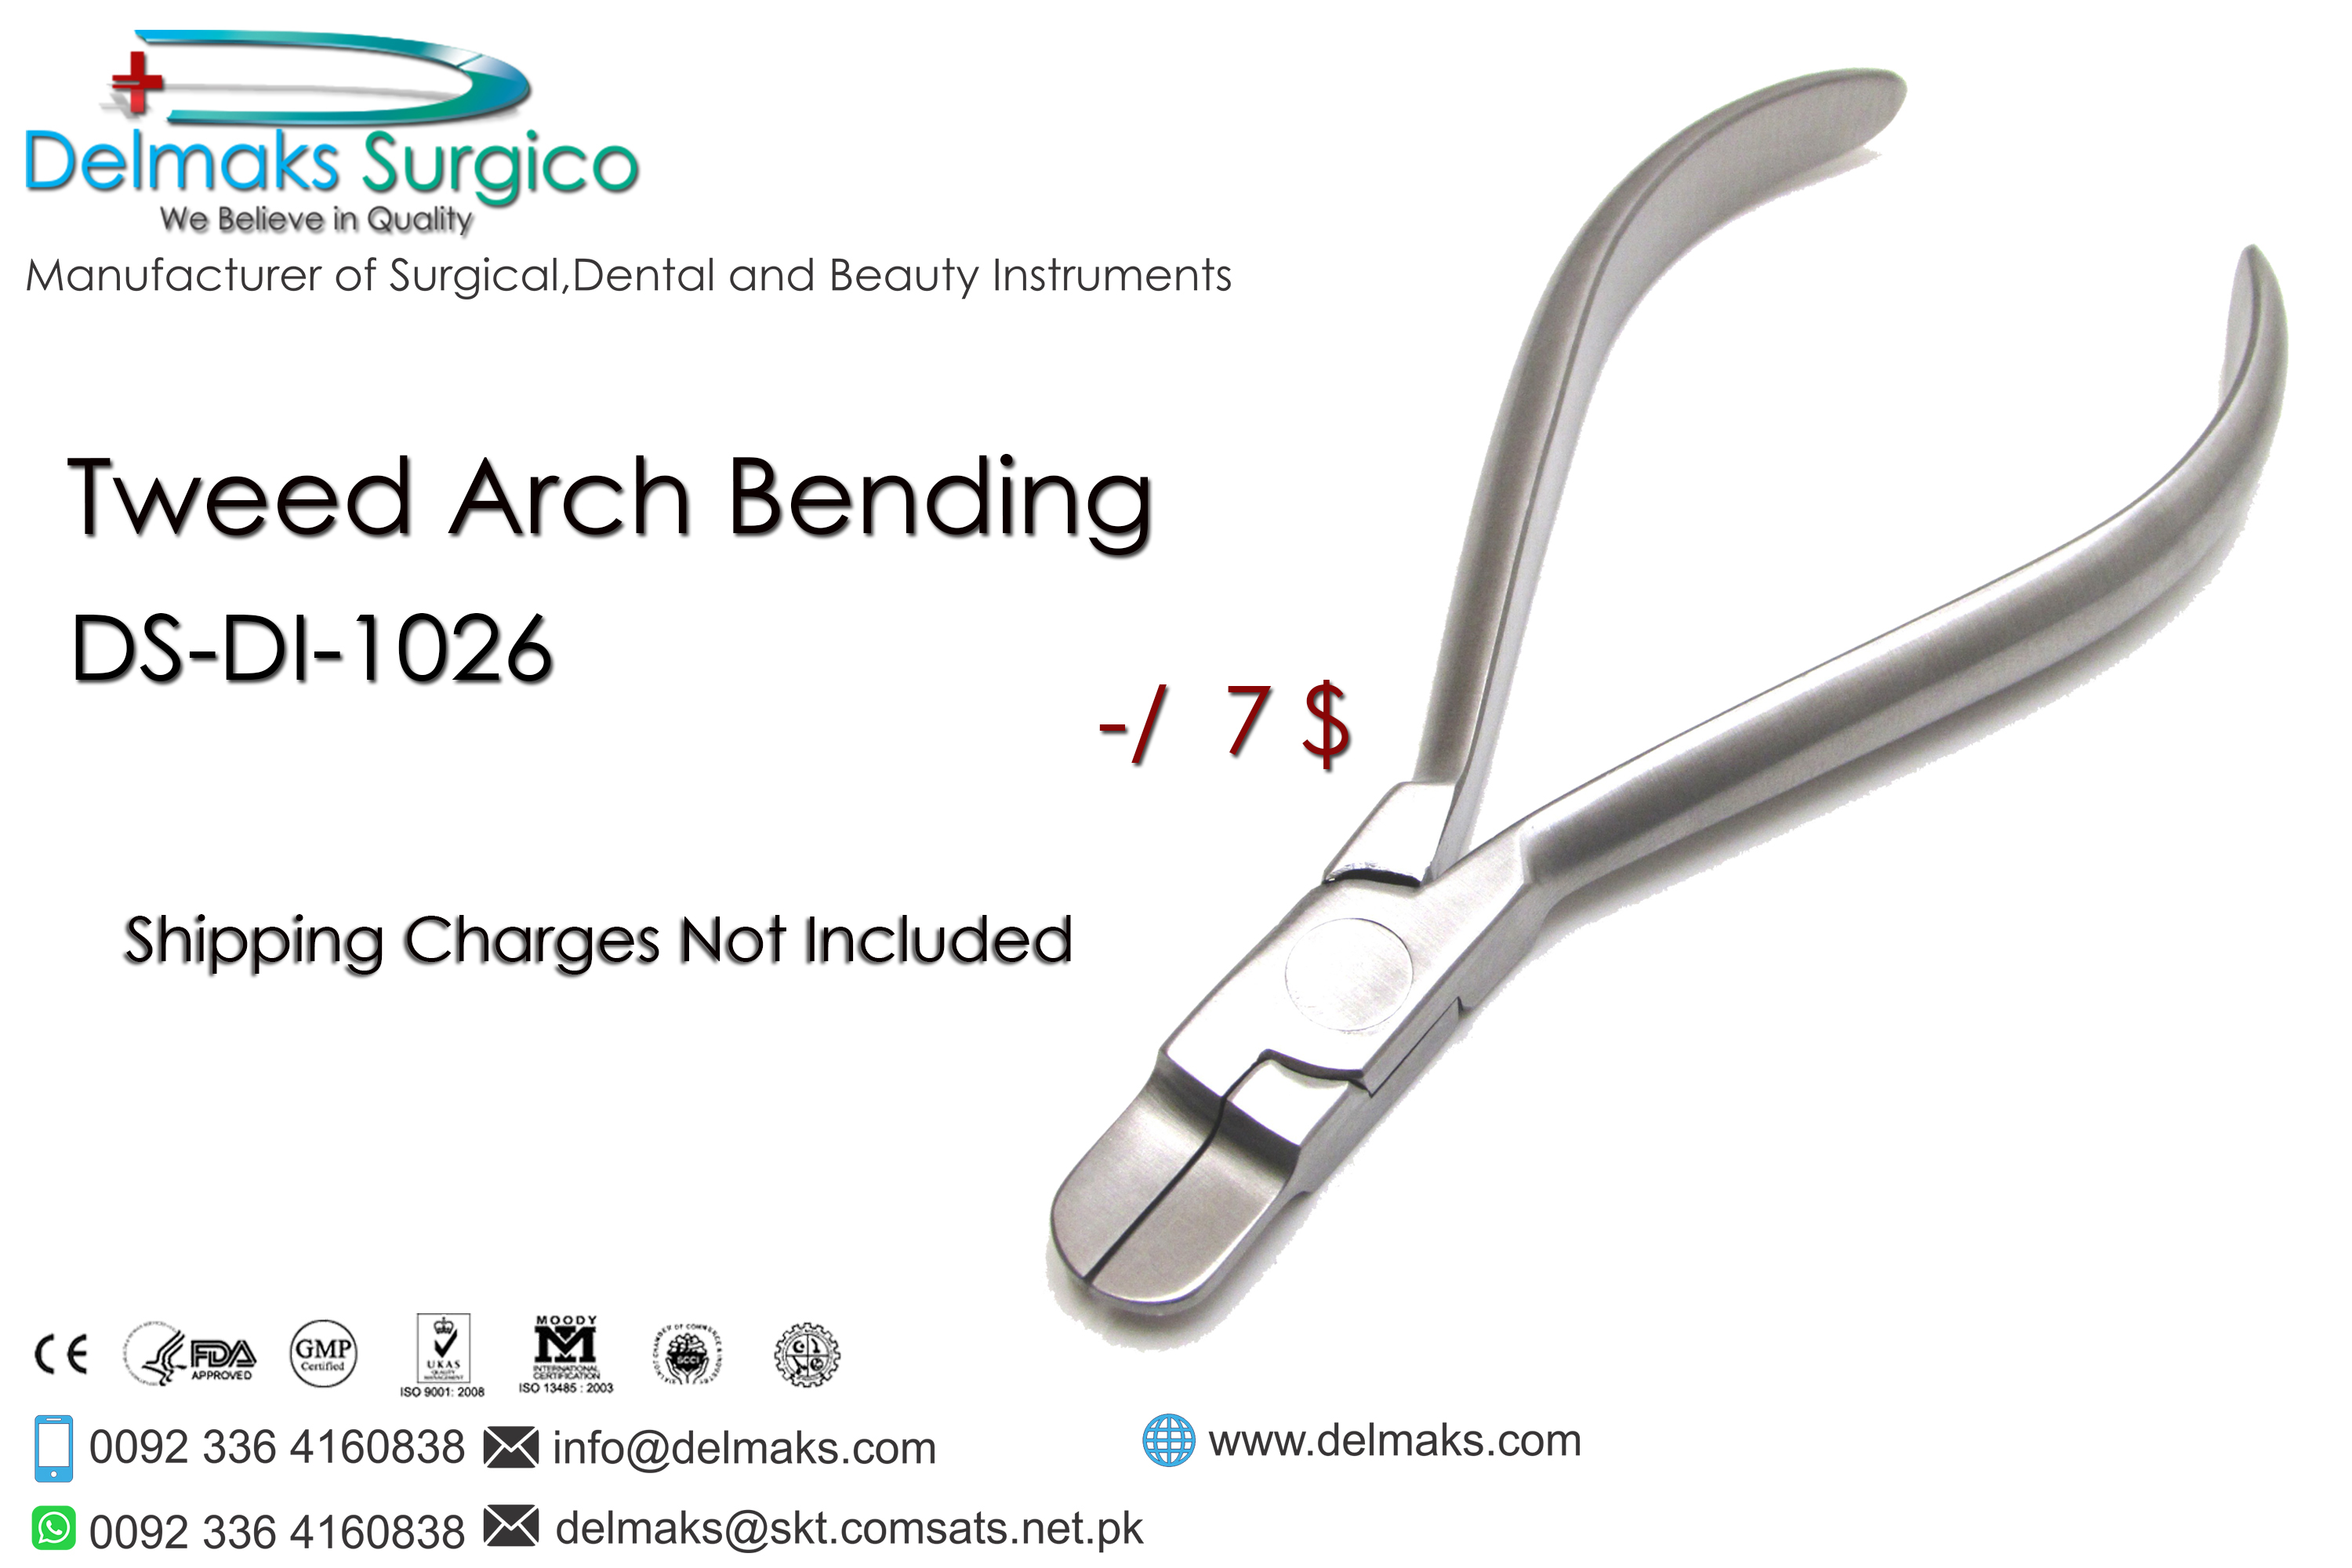 Tweed Arch Bending Plier-Orthodontic Pliers-Orthodontic Instruments-Dental Instruments-Delmaks Surgico